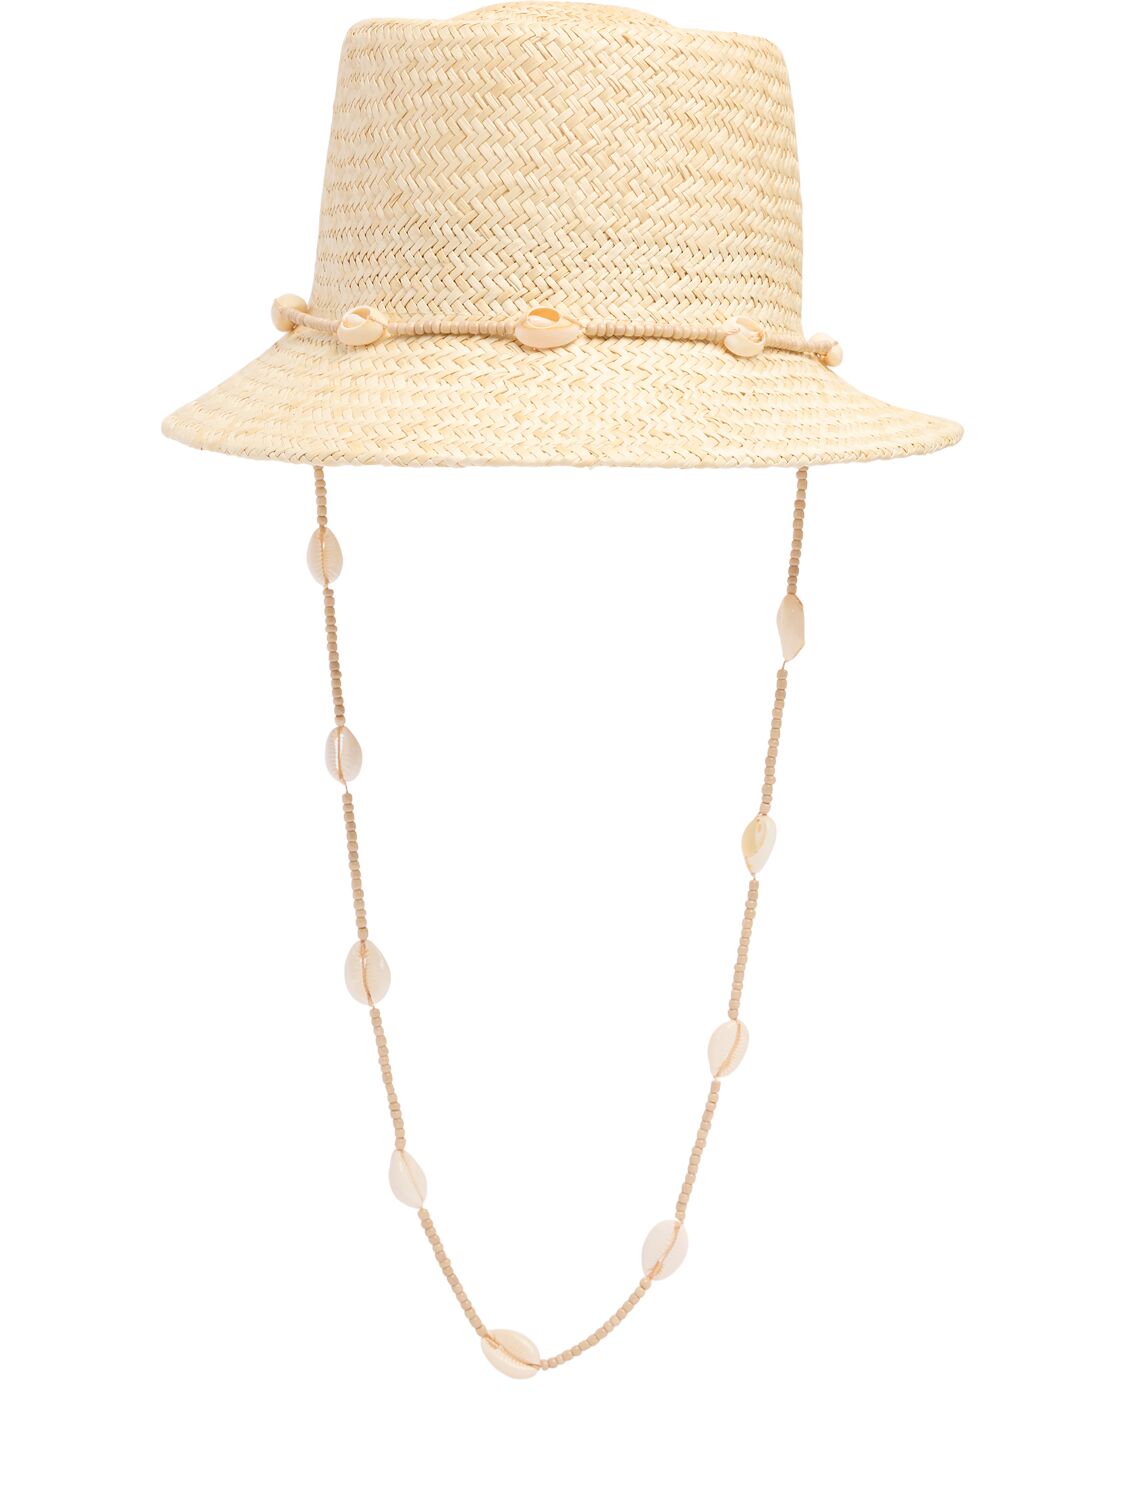 Image of Inca Seashell Bucket Hat